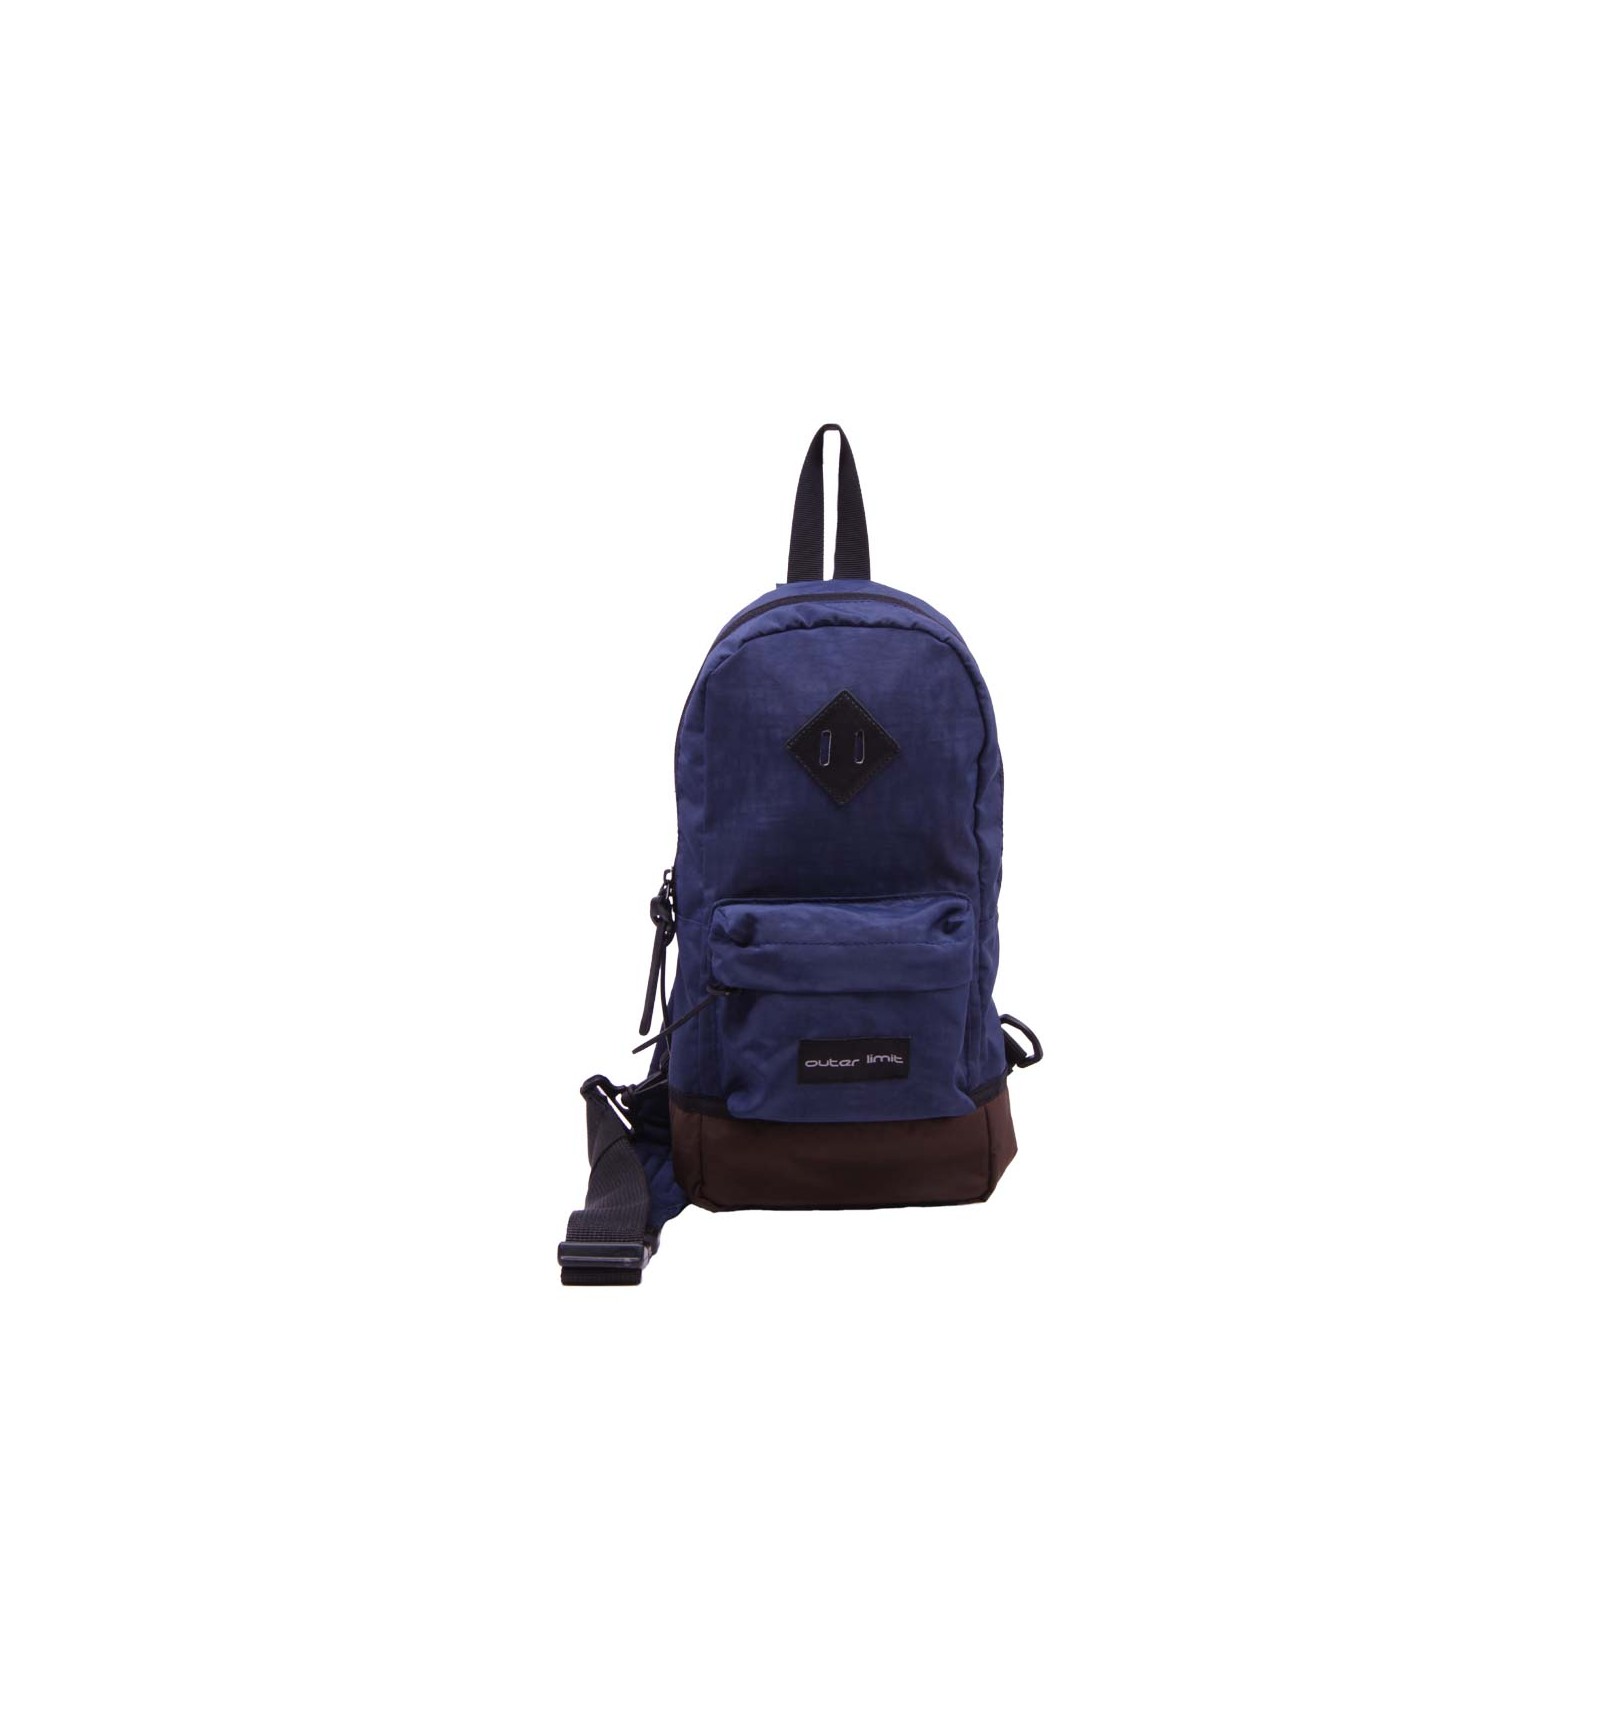 Avnex Backpack Purse for Women PU Leather Shoulder Backpack 25 L Laptop  Backpack Black - Price in India | Flipkart.com